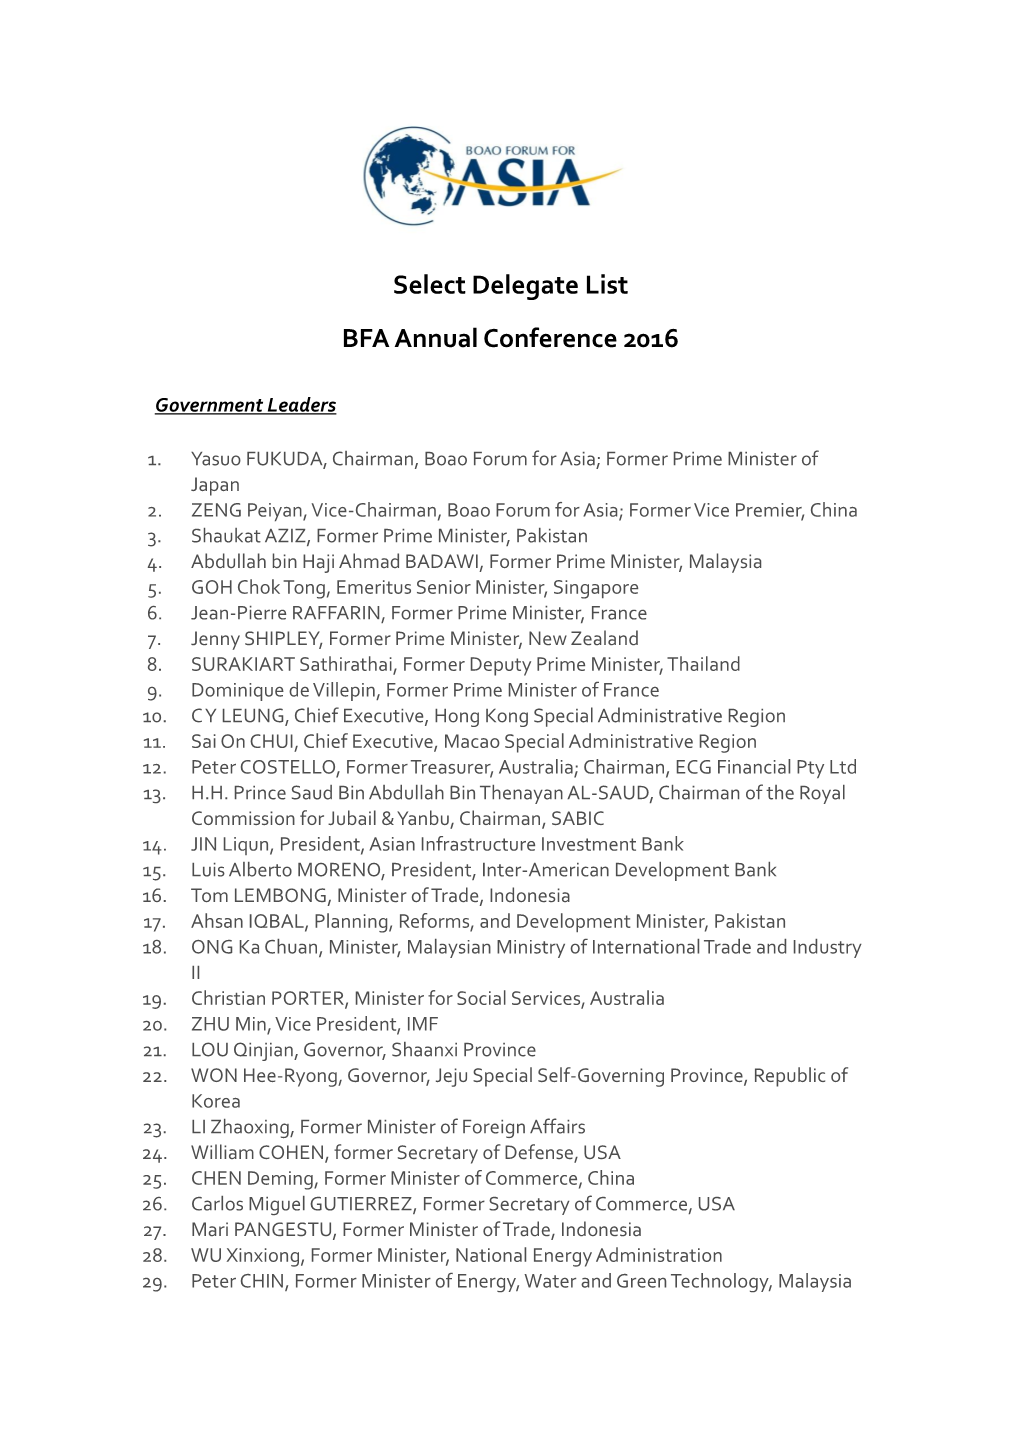 Select Delegate List BFA Annual Conference 2016